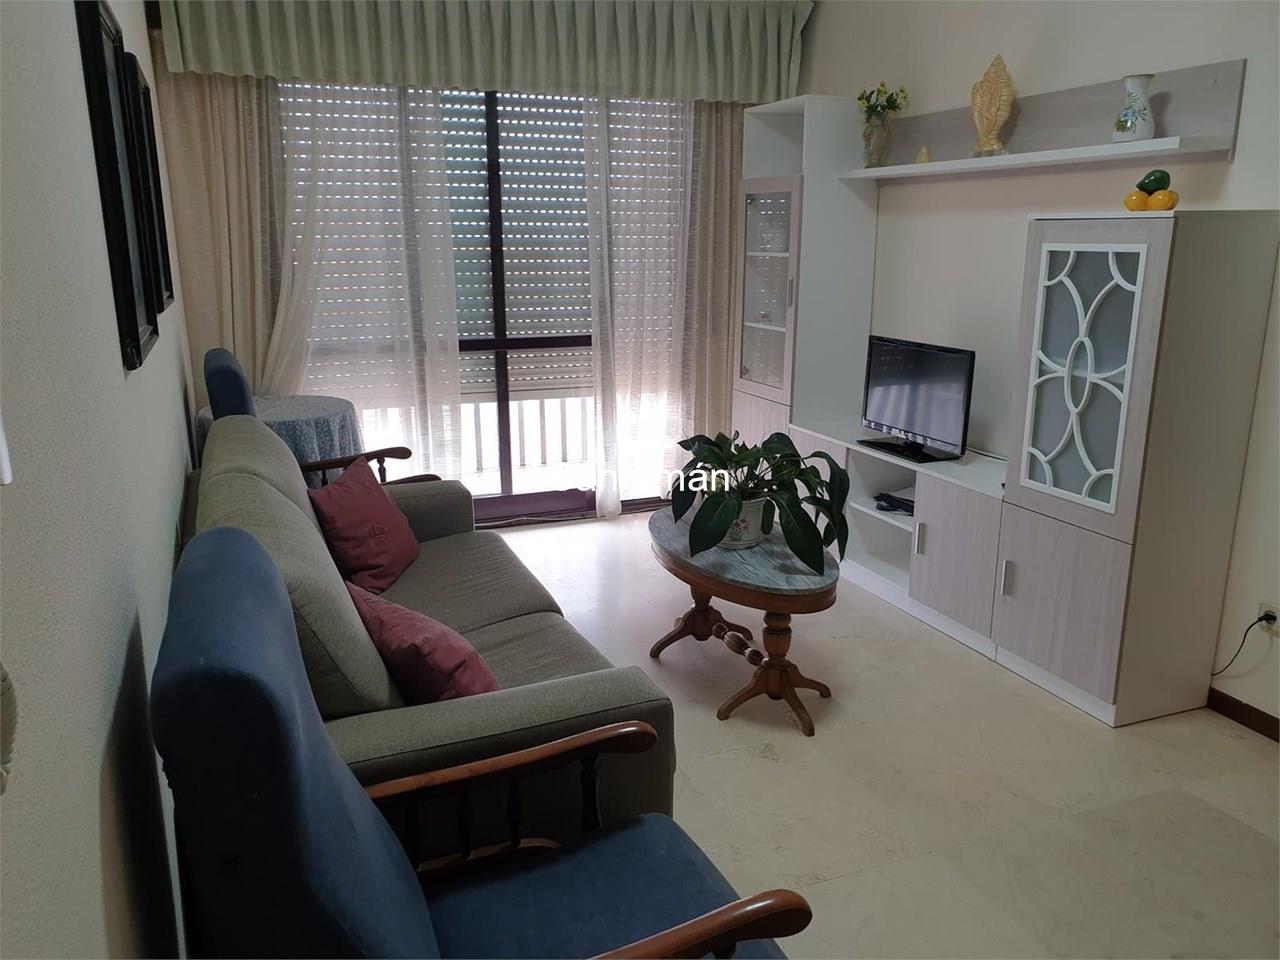 Foto 6 Apartamento dos dormitorios en Playa América - Nigrán. Alquiler temporada invierno Sept / Junio.